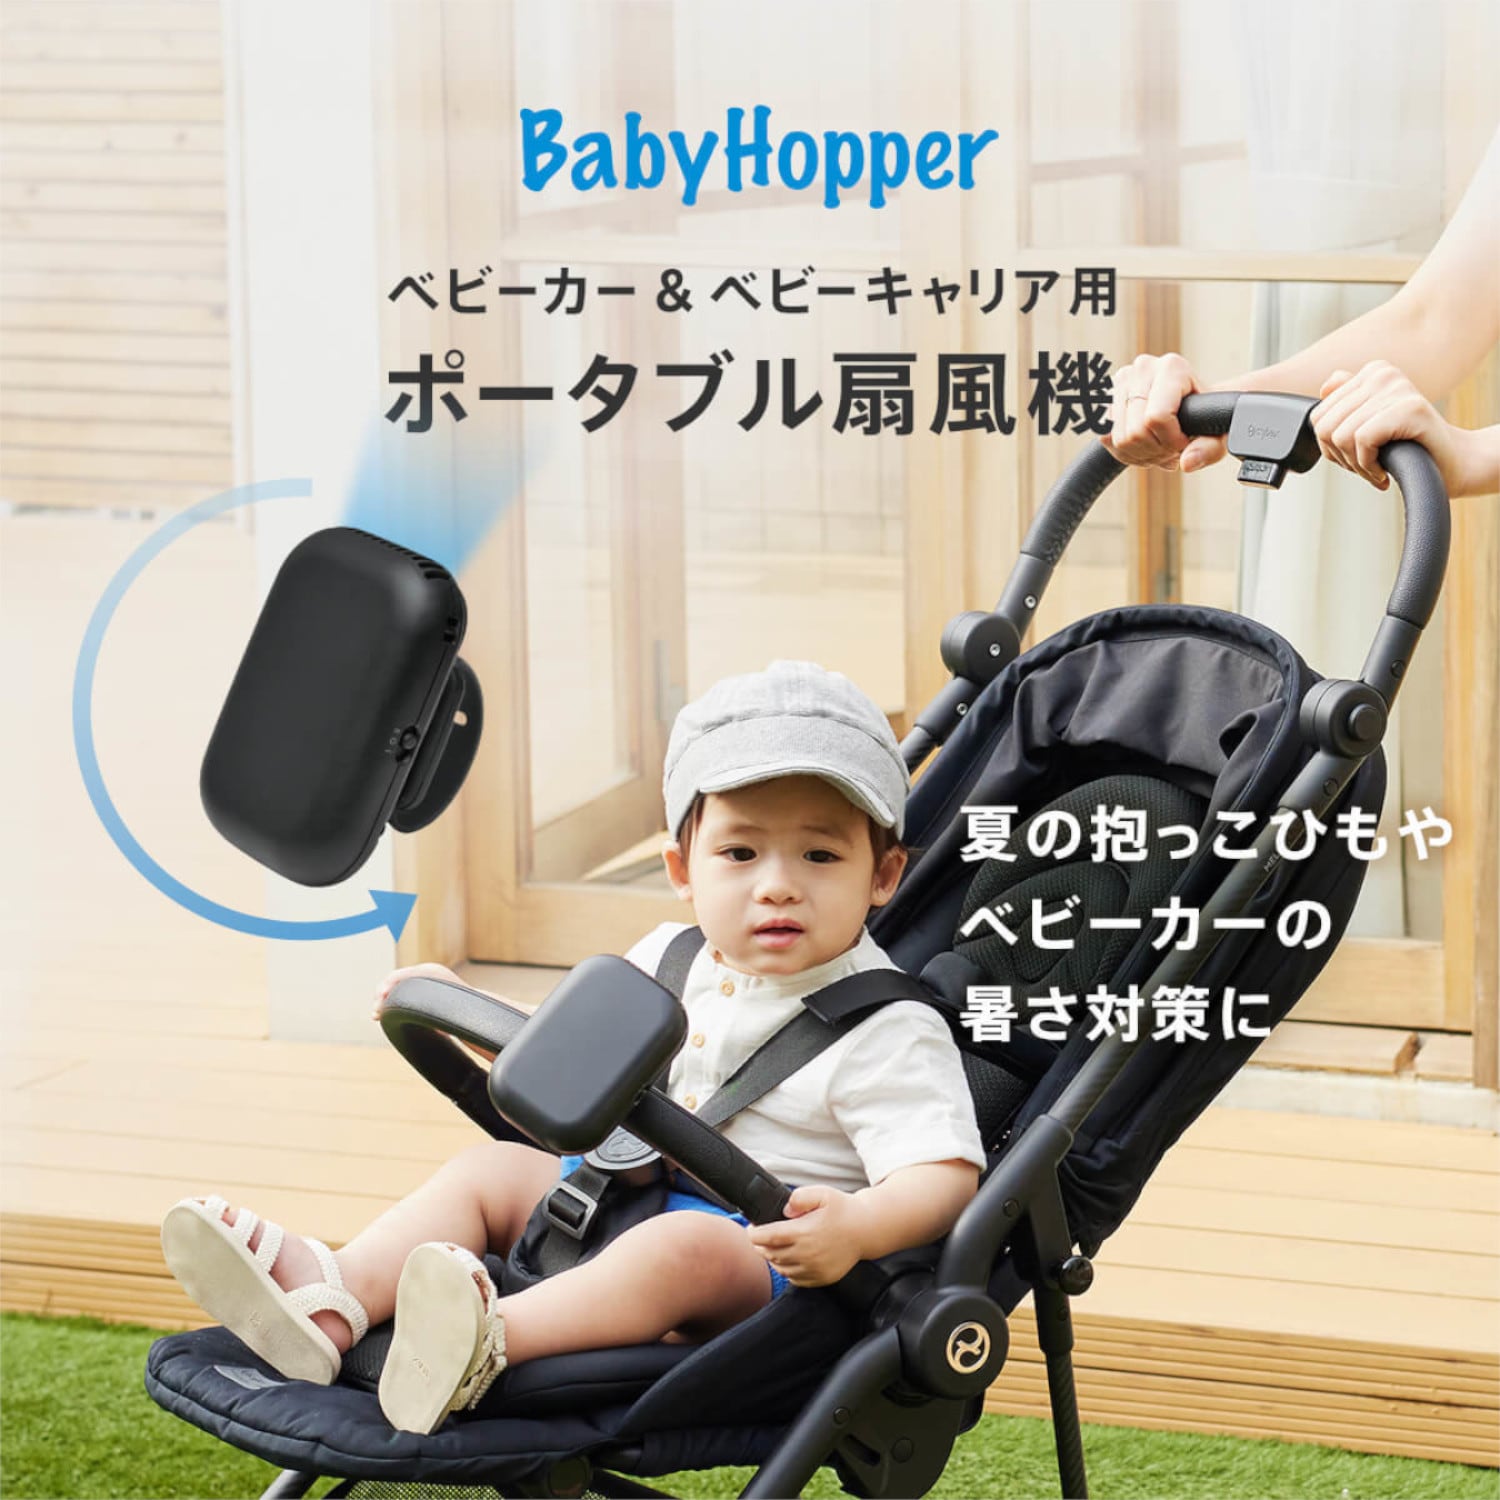 【ベビー ホッパー/BABY HOPPER】ベビーカー & 抱っこ紐用ポータブル扇風機 BabyHopper